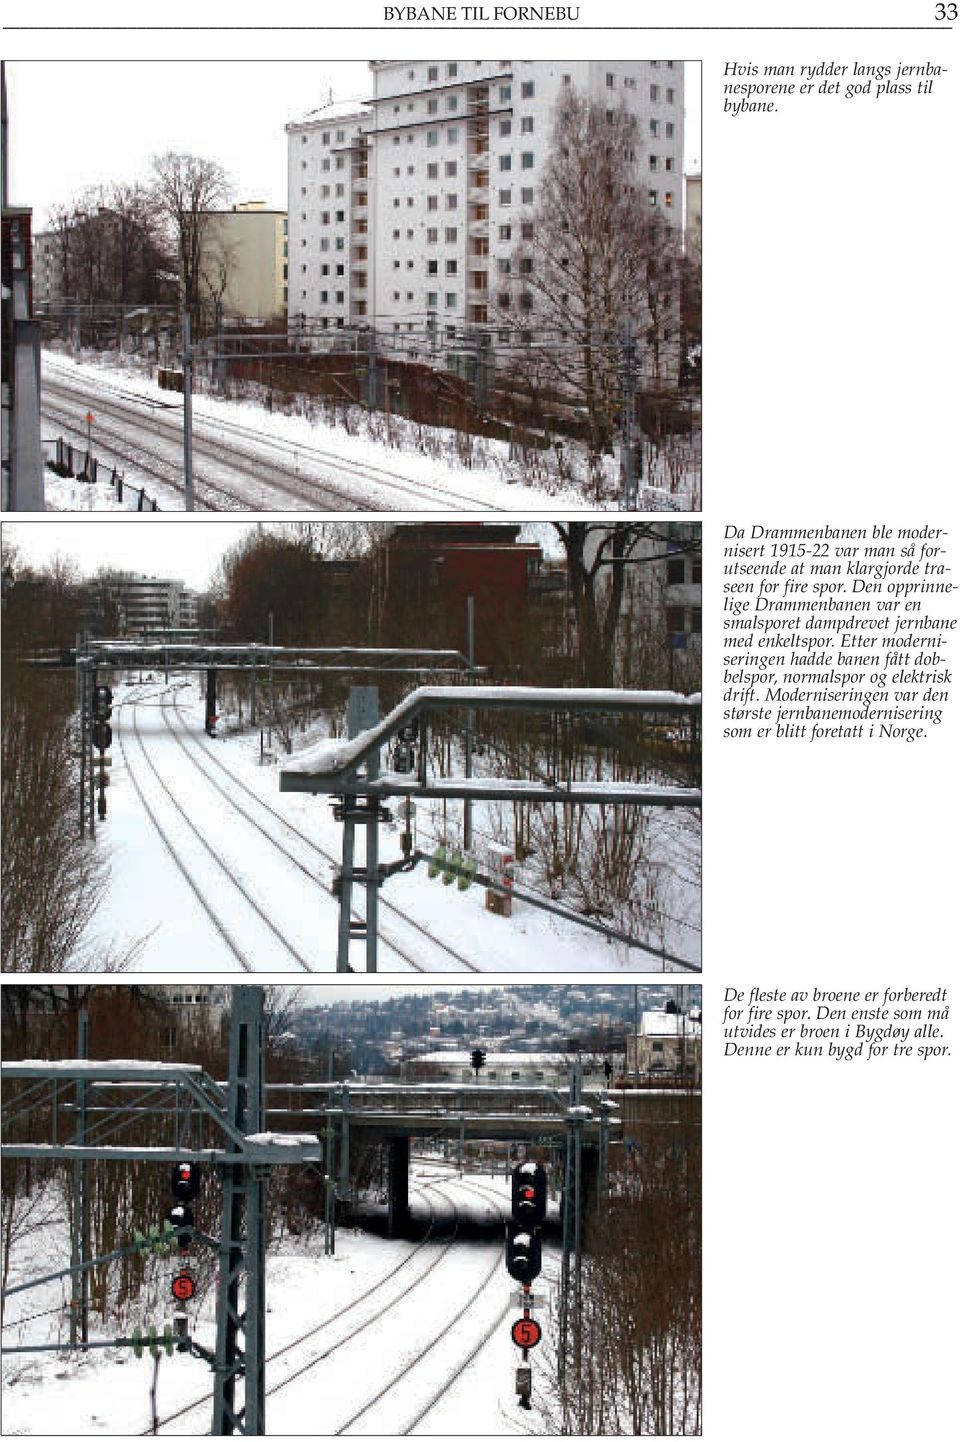 Den opprinnelige Drammenbanen var en smalsporet dampdrevet jernbane med enkeltspor.